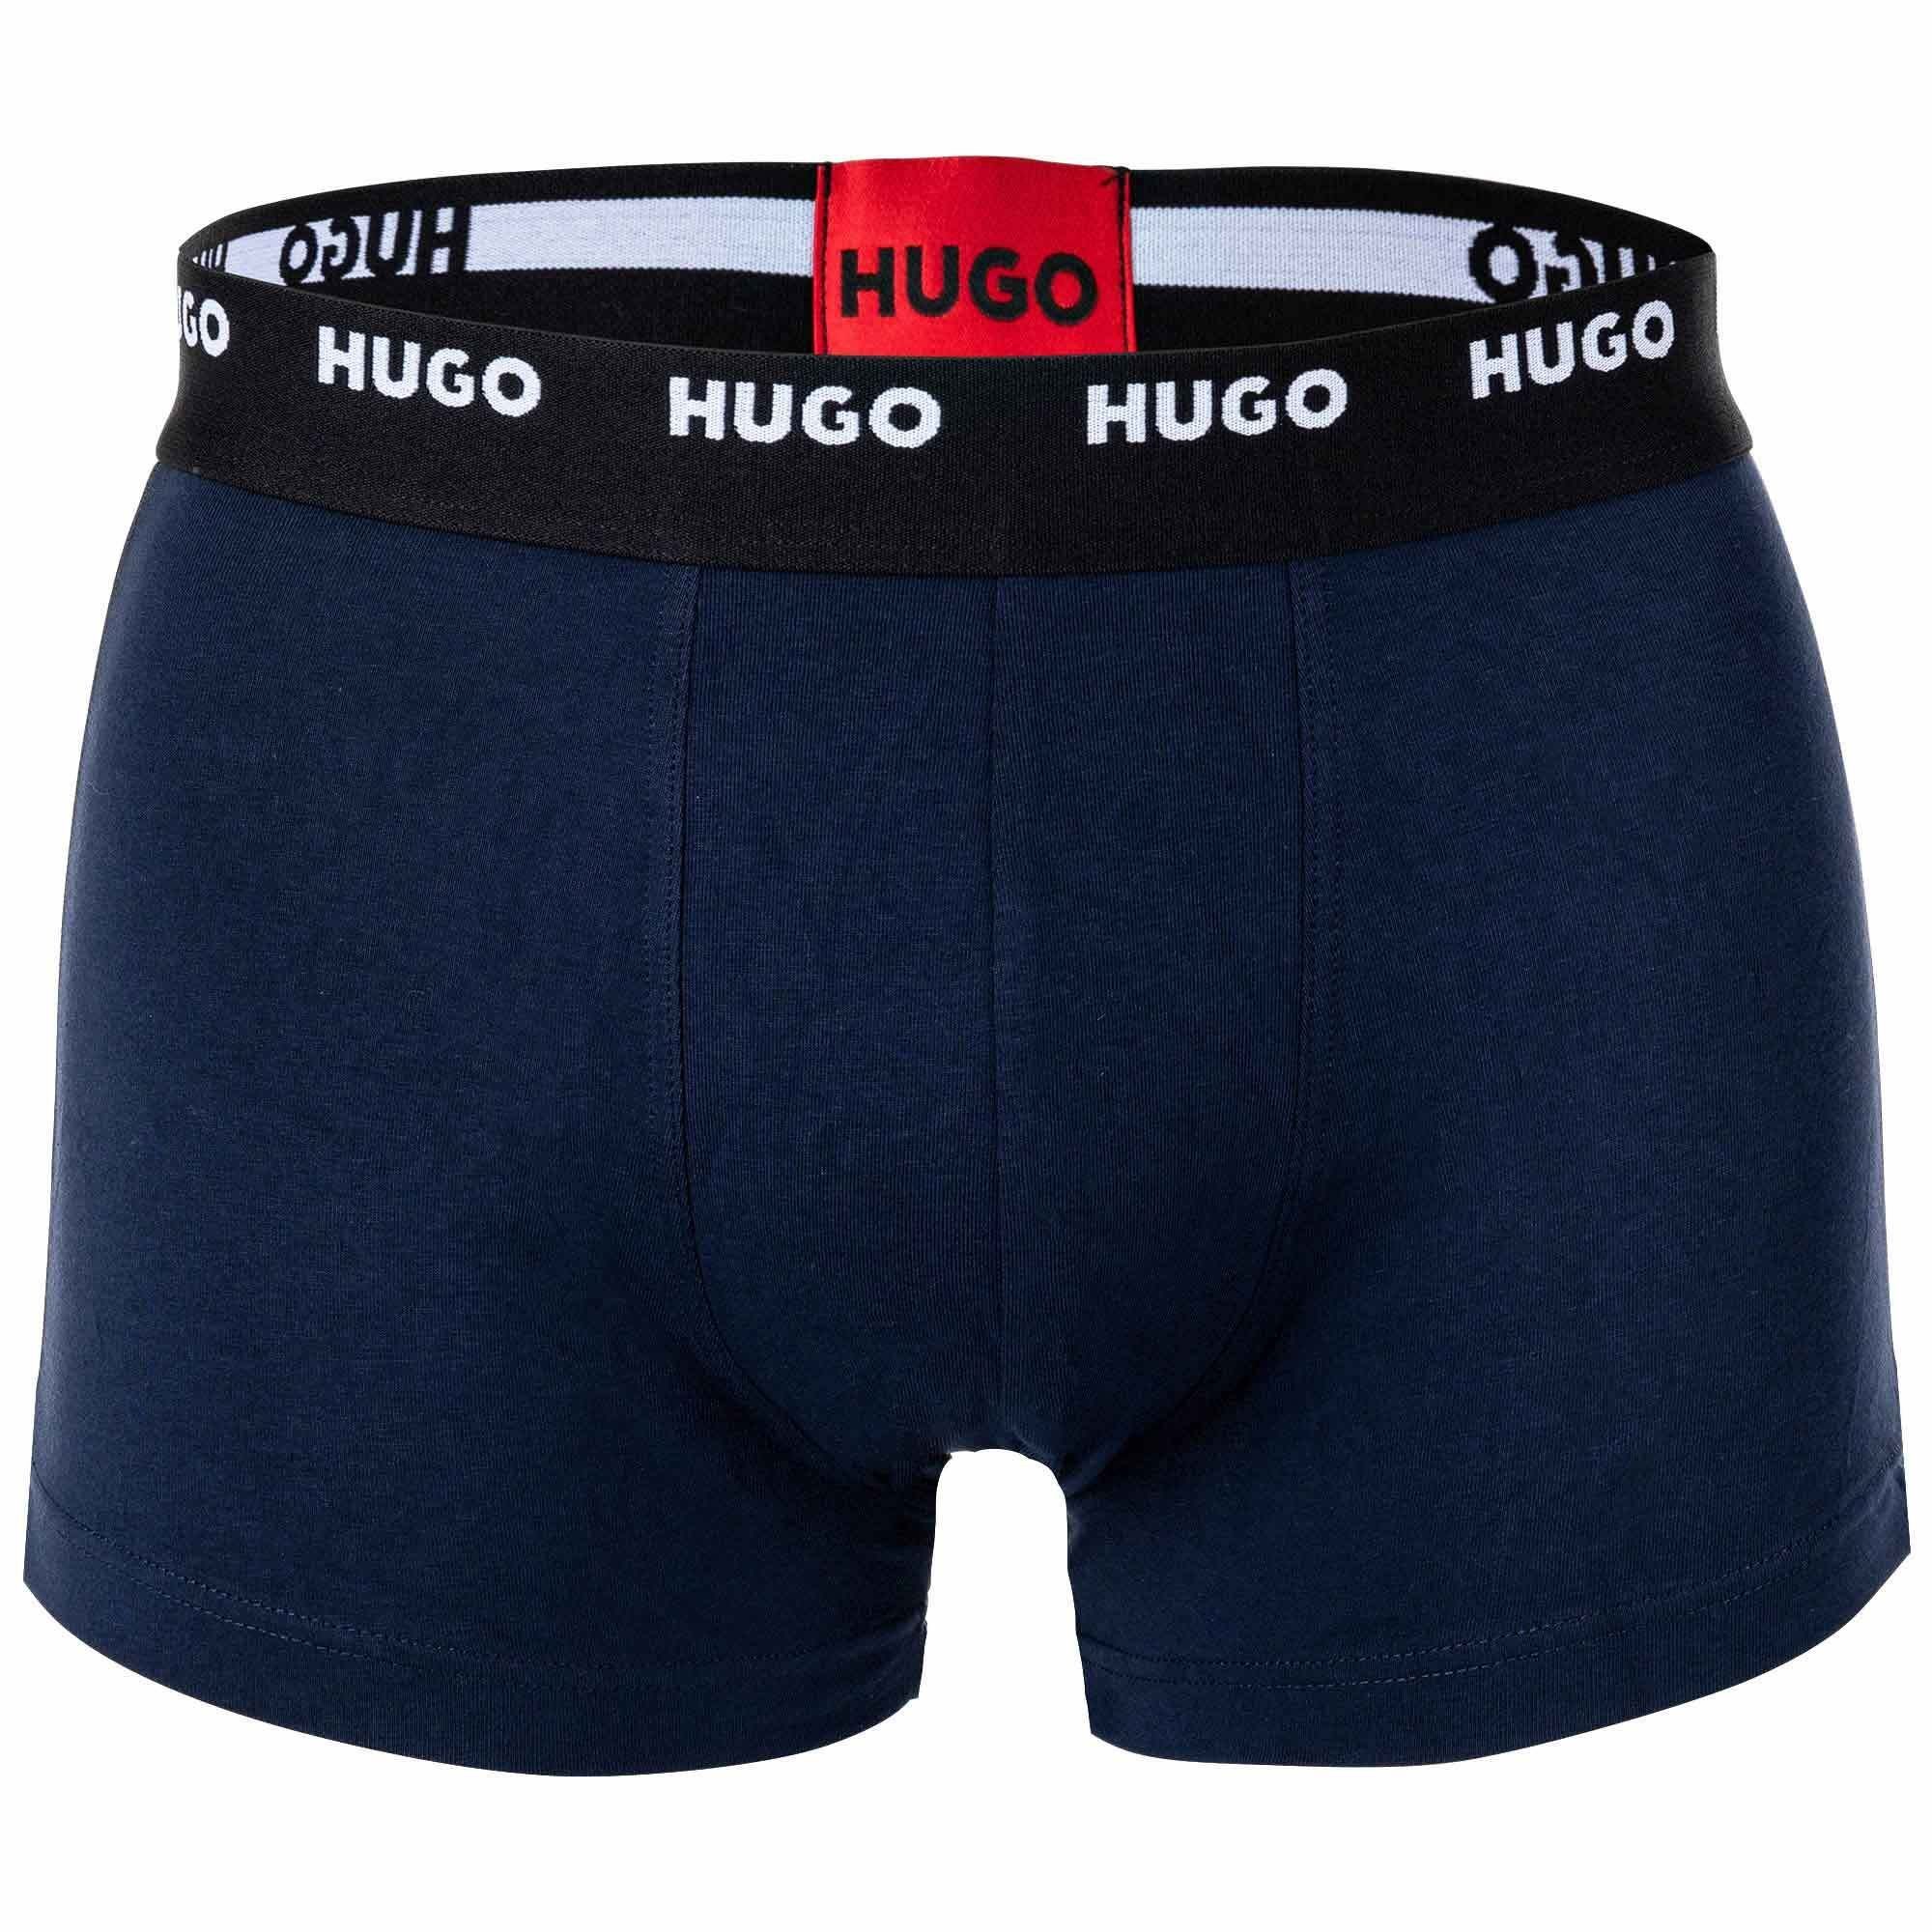 HUGO Boxer Herren Boxer Shorts, Pack Schwarz/Rot/Grün/Blau Five - Trunks Pack 5er